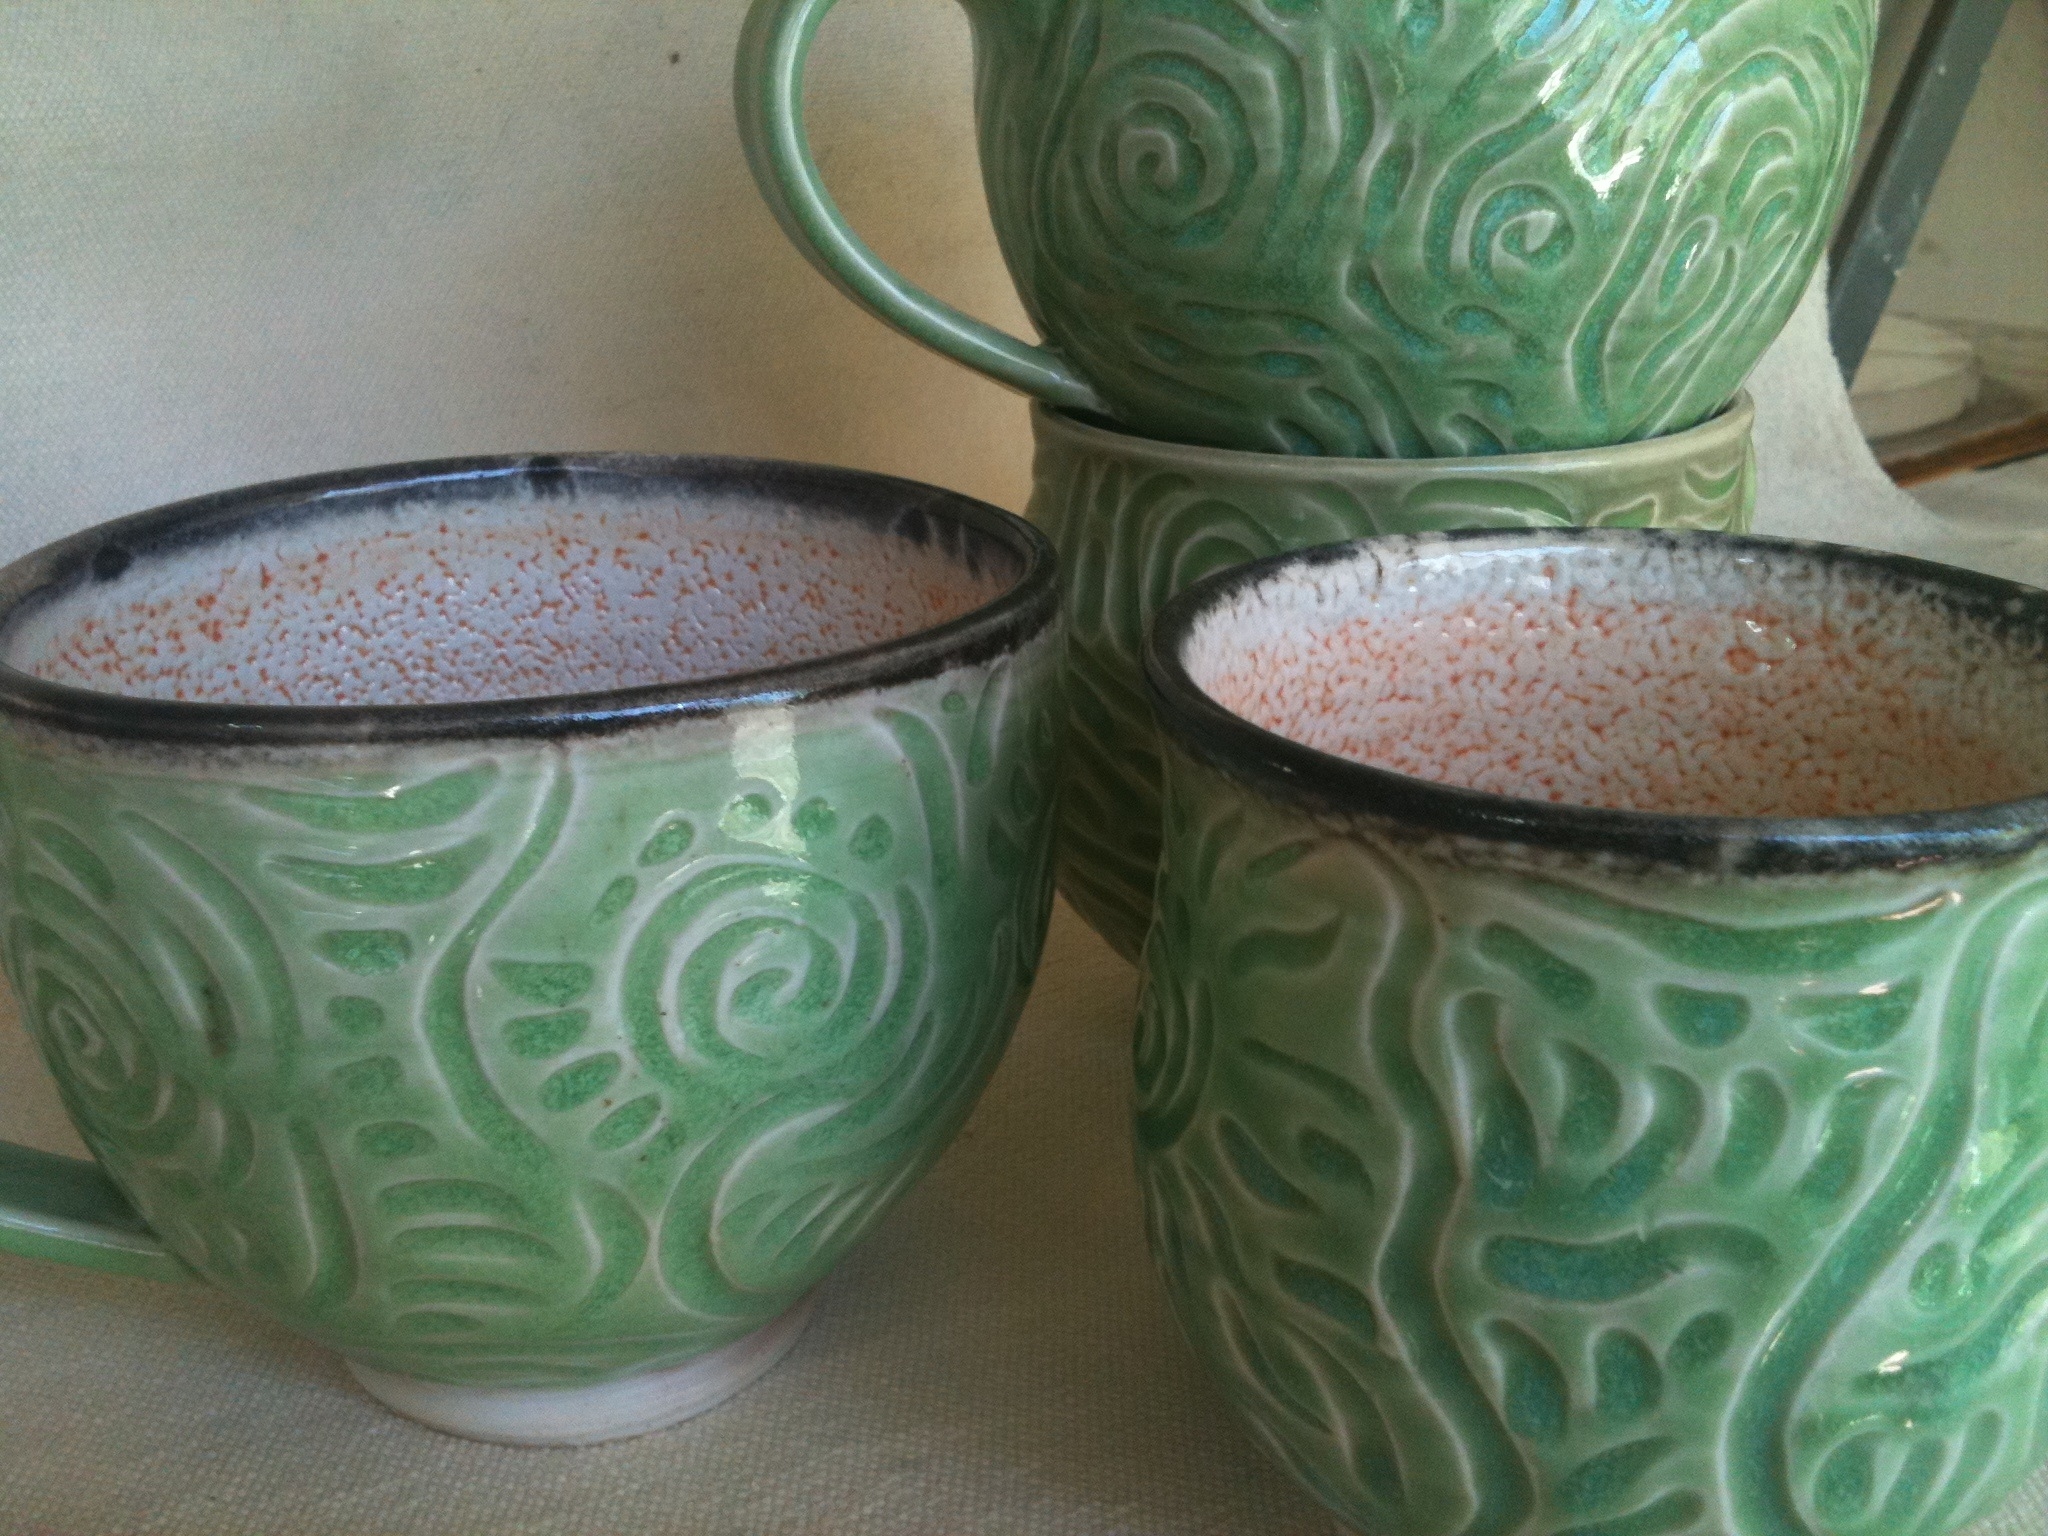 Carved porcelain mugs